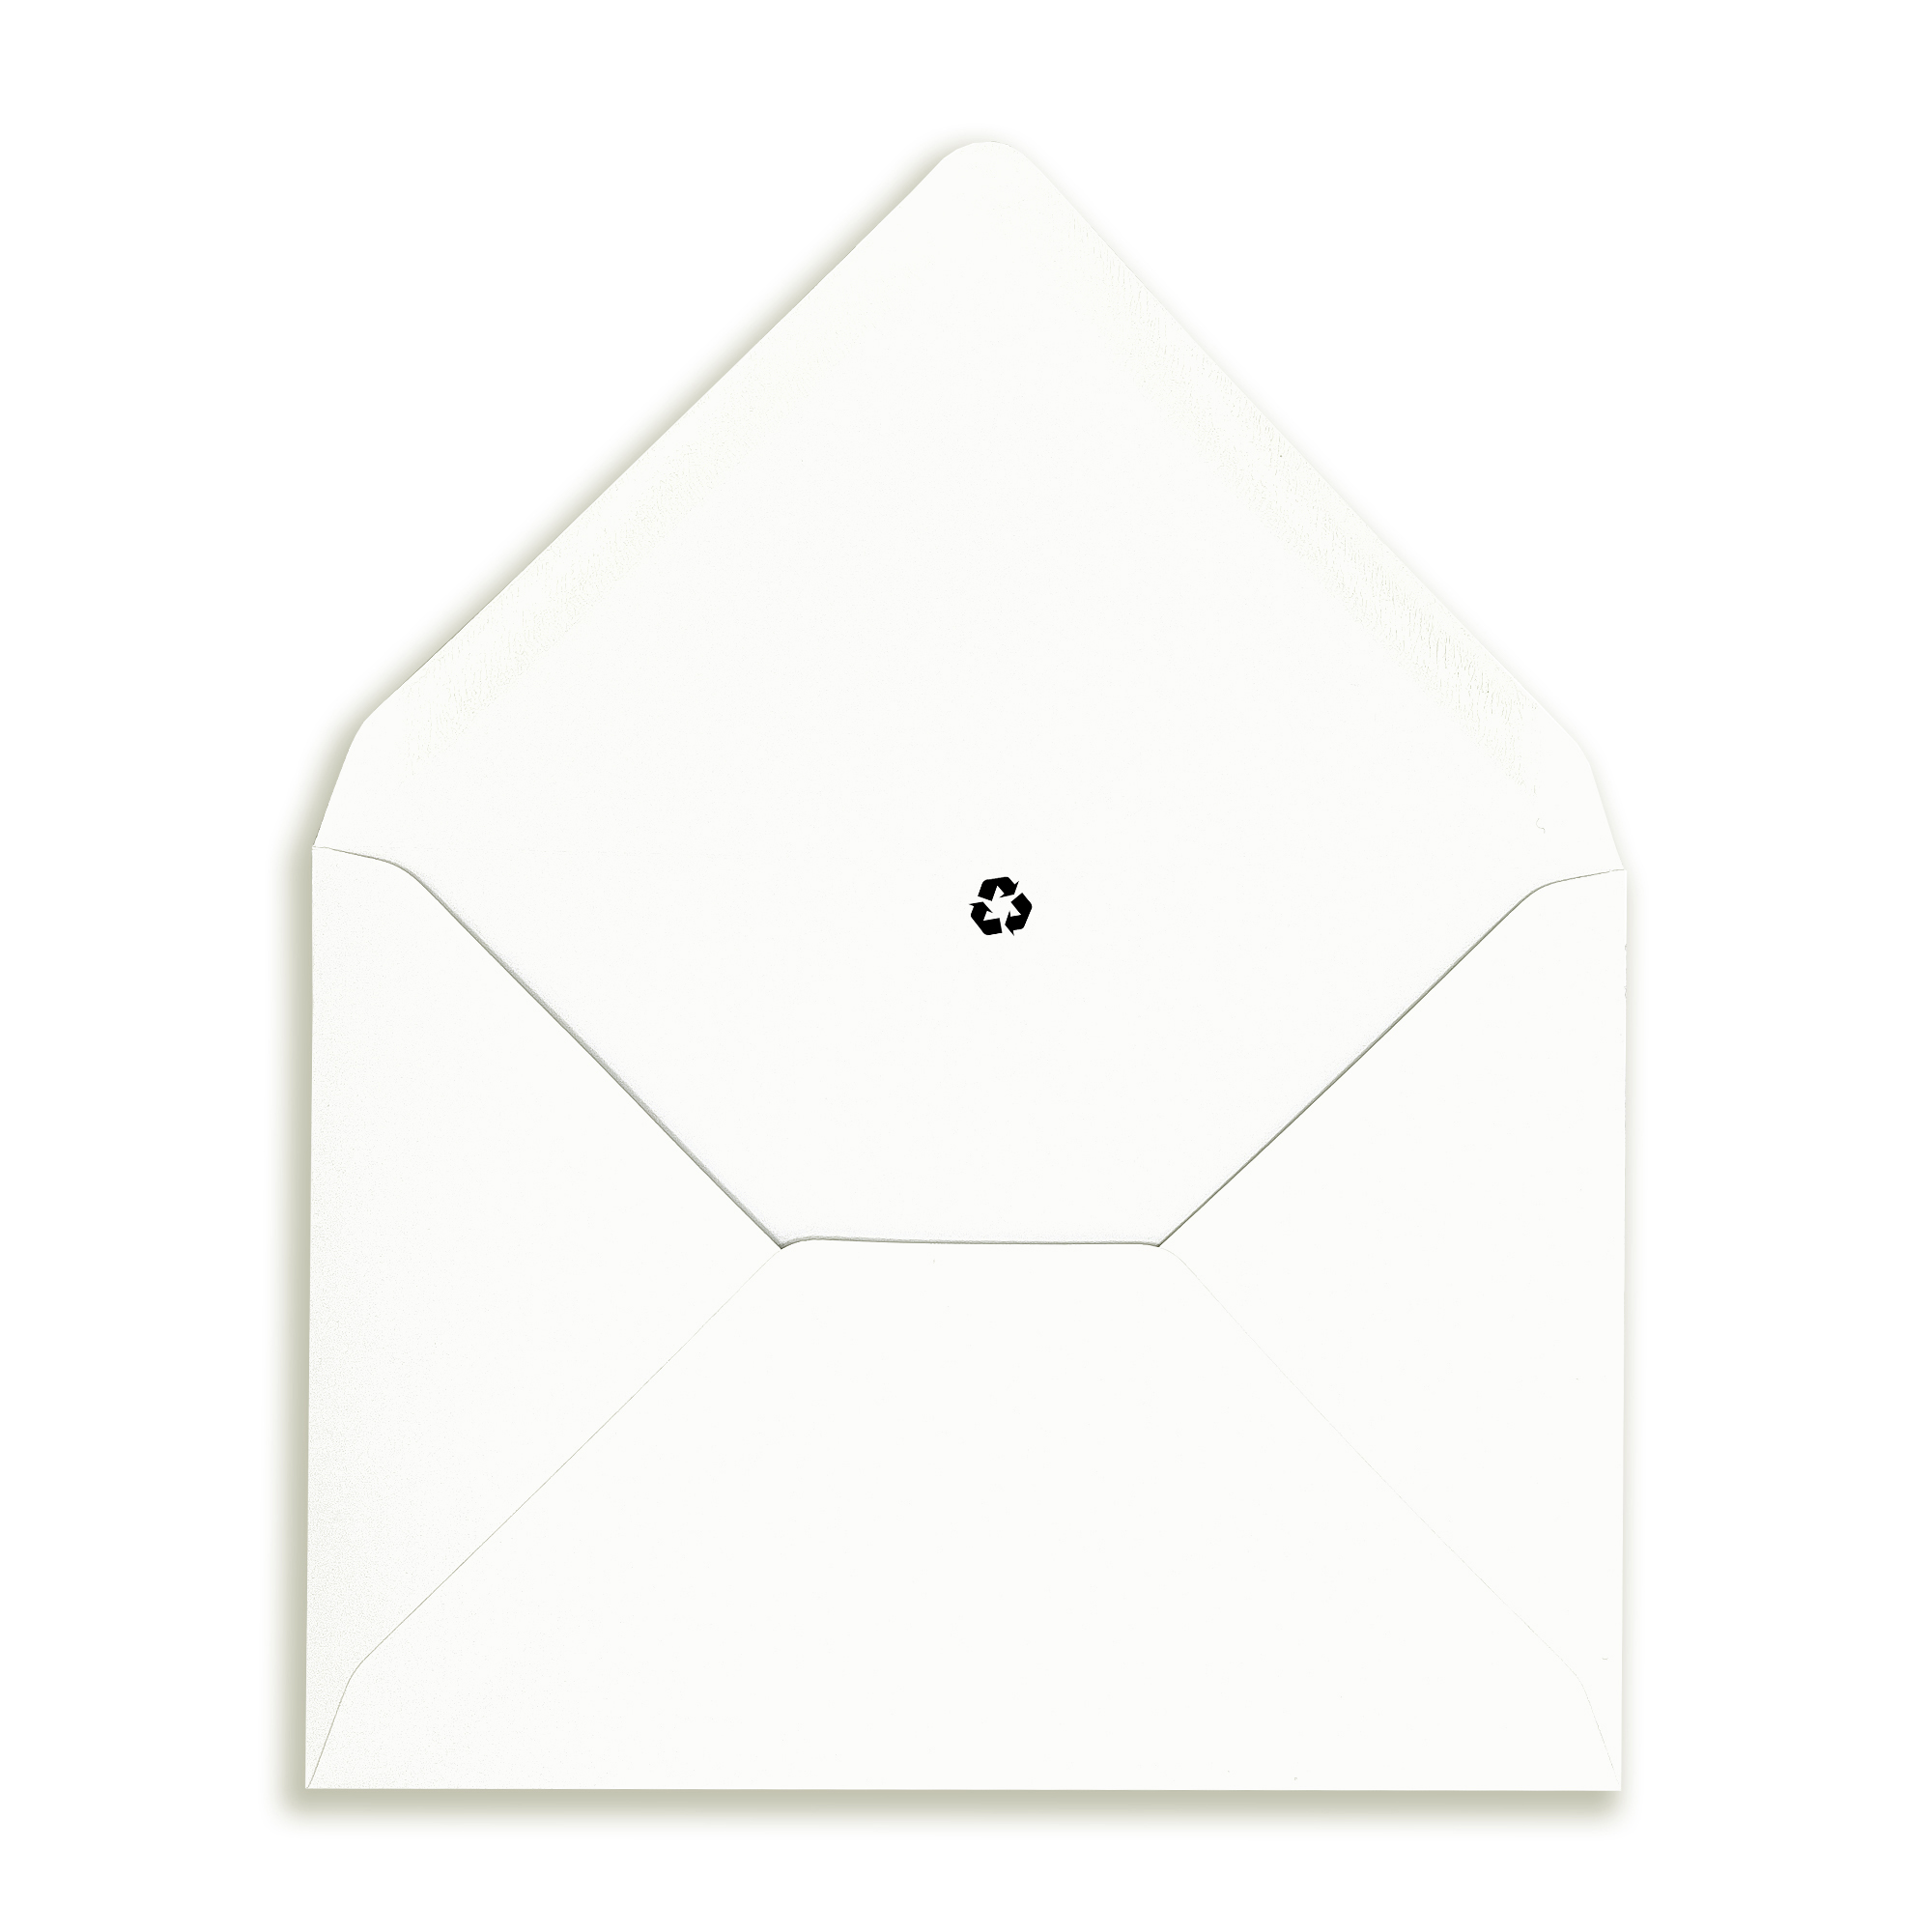 133×184-echo-shiro-white-recycled-envelopes-flap-open